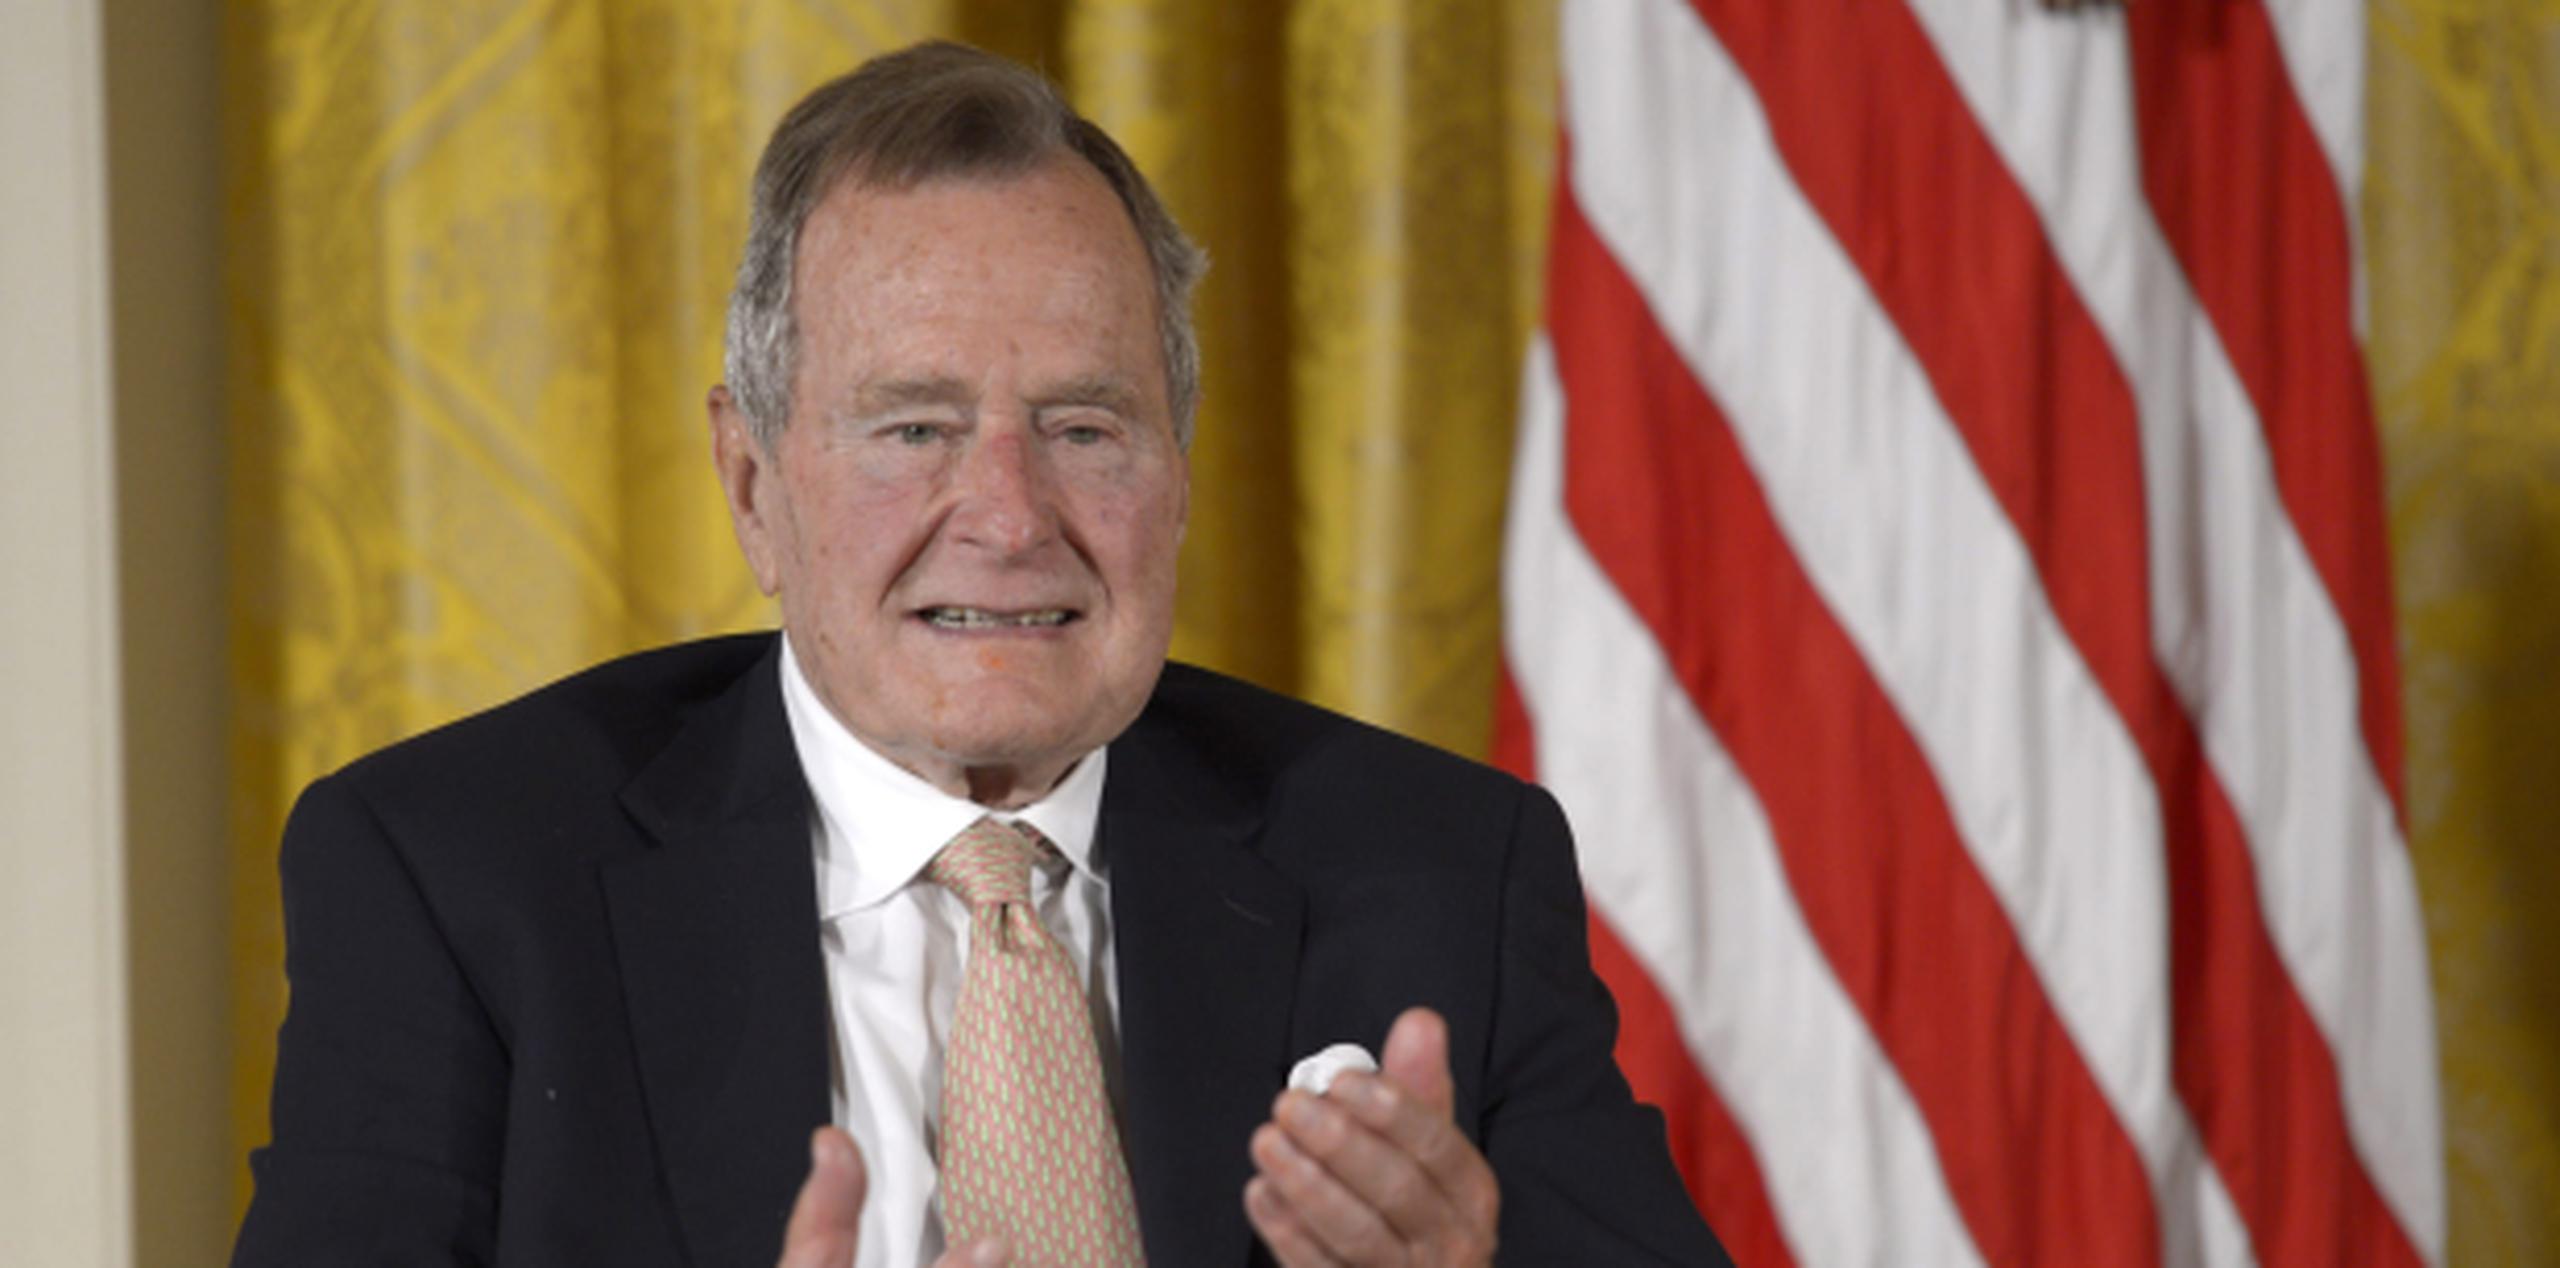 George H. W. Bush fue presidente de los Estados Unidos de 1989 a 1993. (EFE / Shawn Thew)